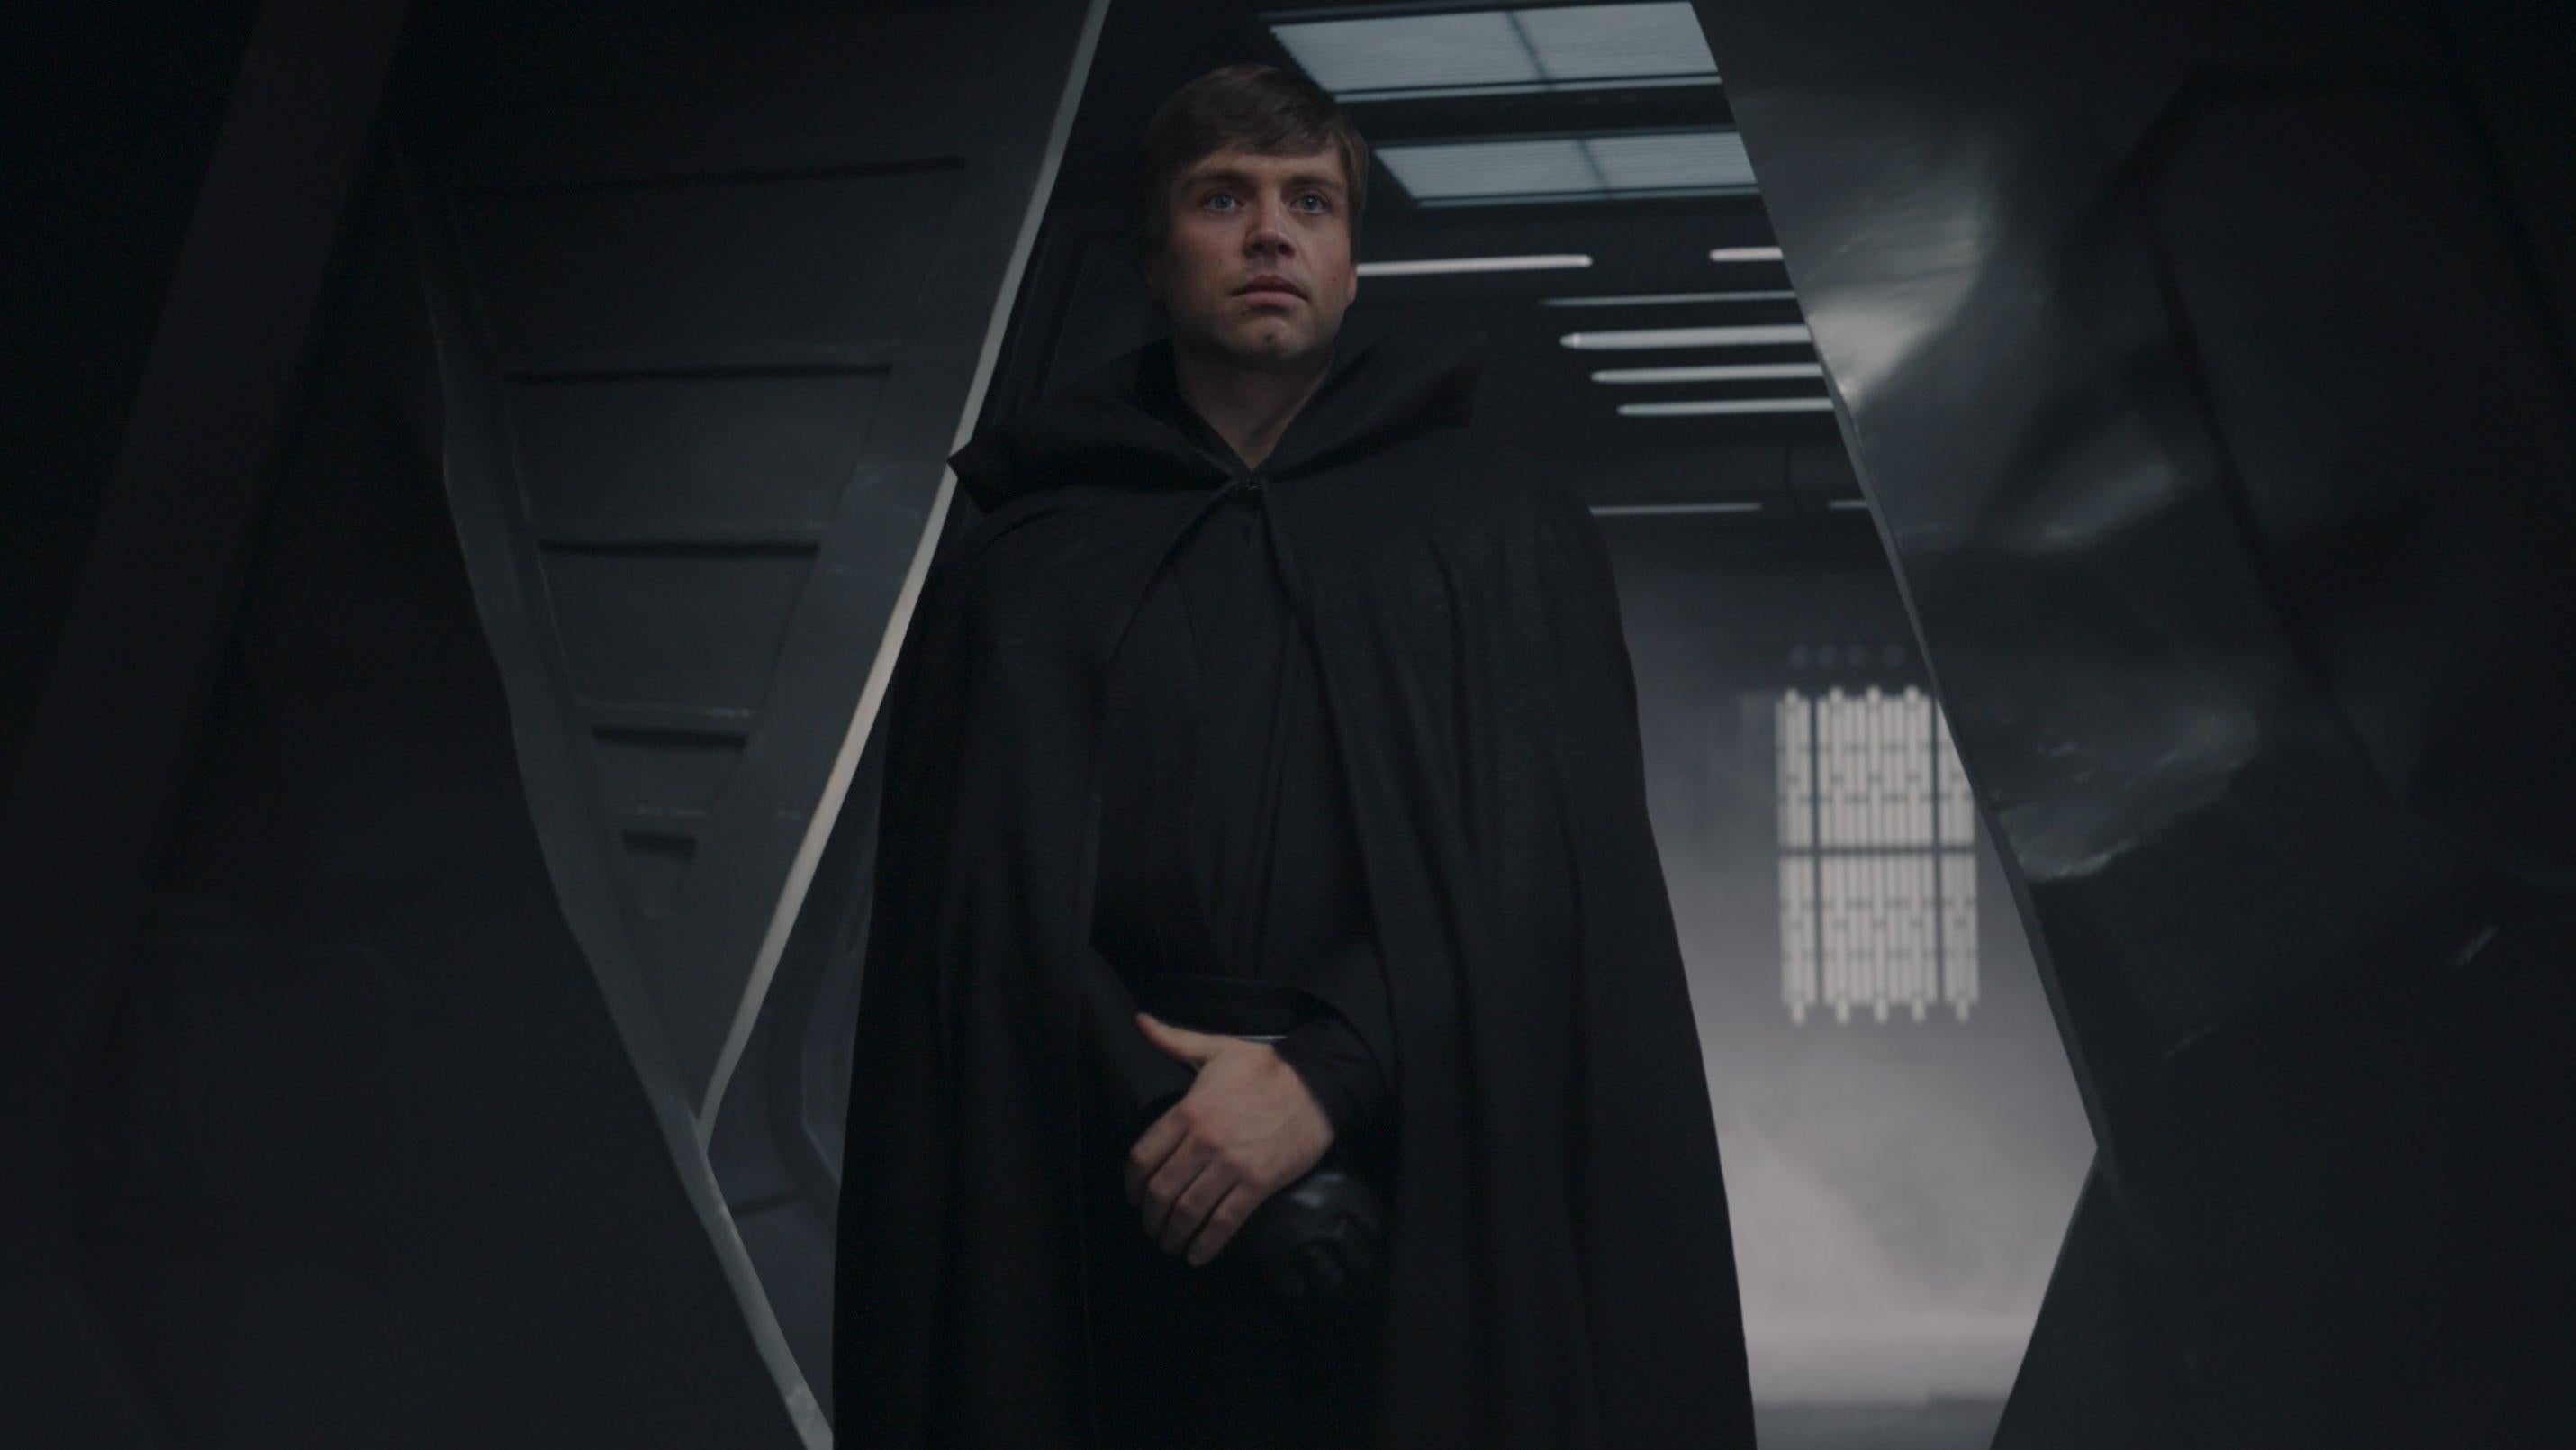 Luke Skywalker on The Mandalorian. (Image: Lucasfilm)